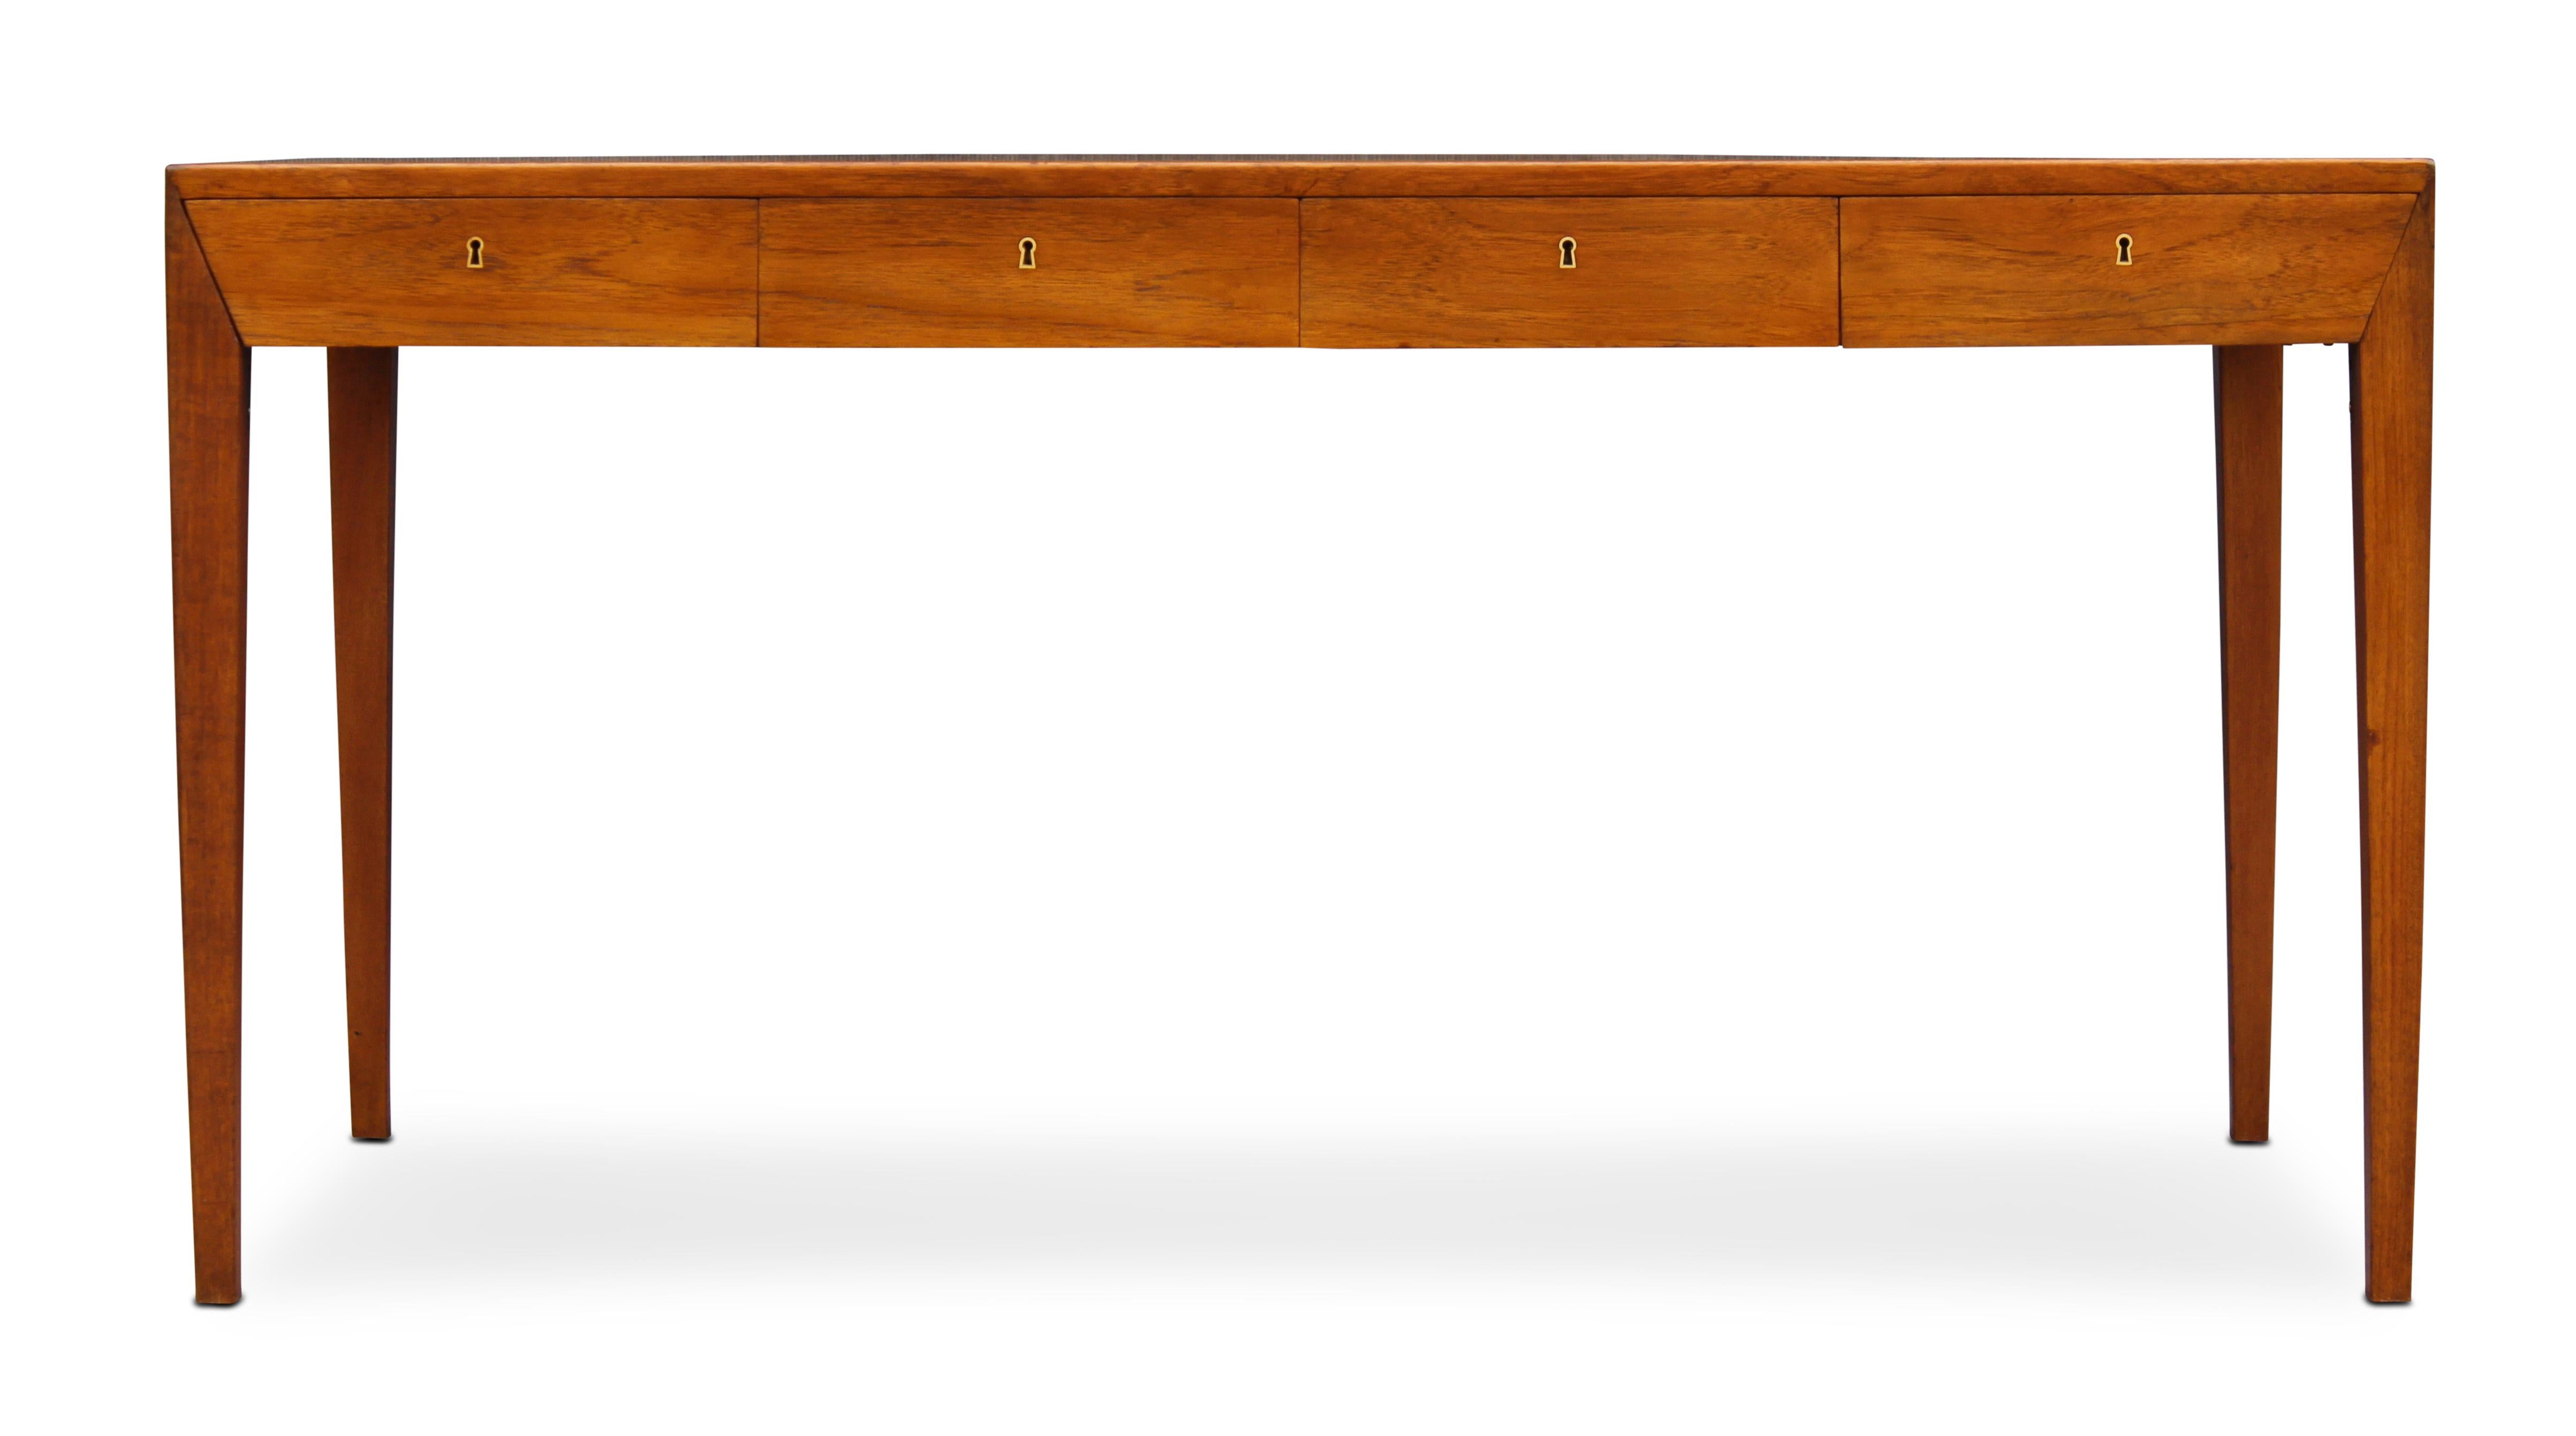 Dieser Schreibtisch wurde in den frühen 1960er Jahren vom dänischen Designer Severin Hansen entworfen und von der Haslevs Møbelfabrik hergestellt. Diese Fabrik ist allgemein für ihre großartige Konstruktion bekannt, und dieser Schreibtisch ist nicht